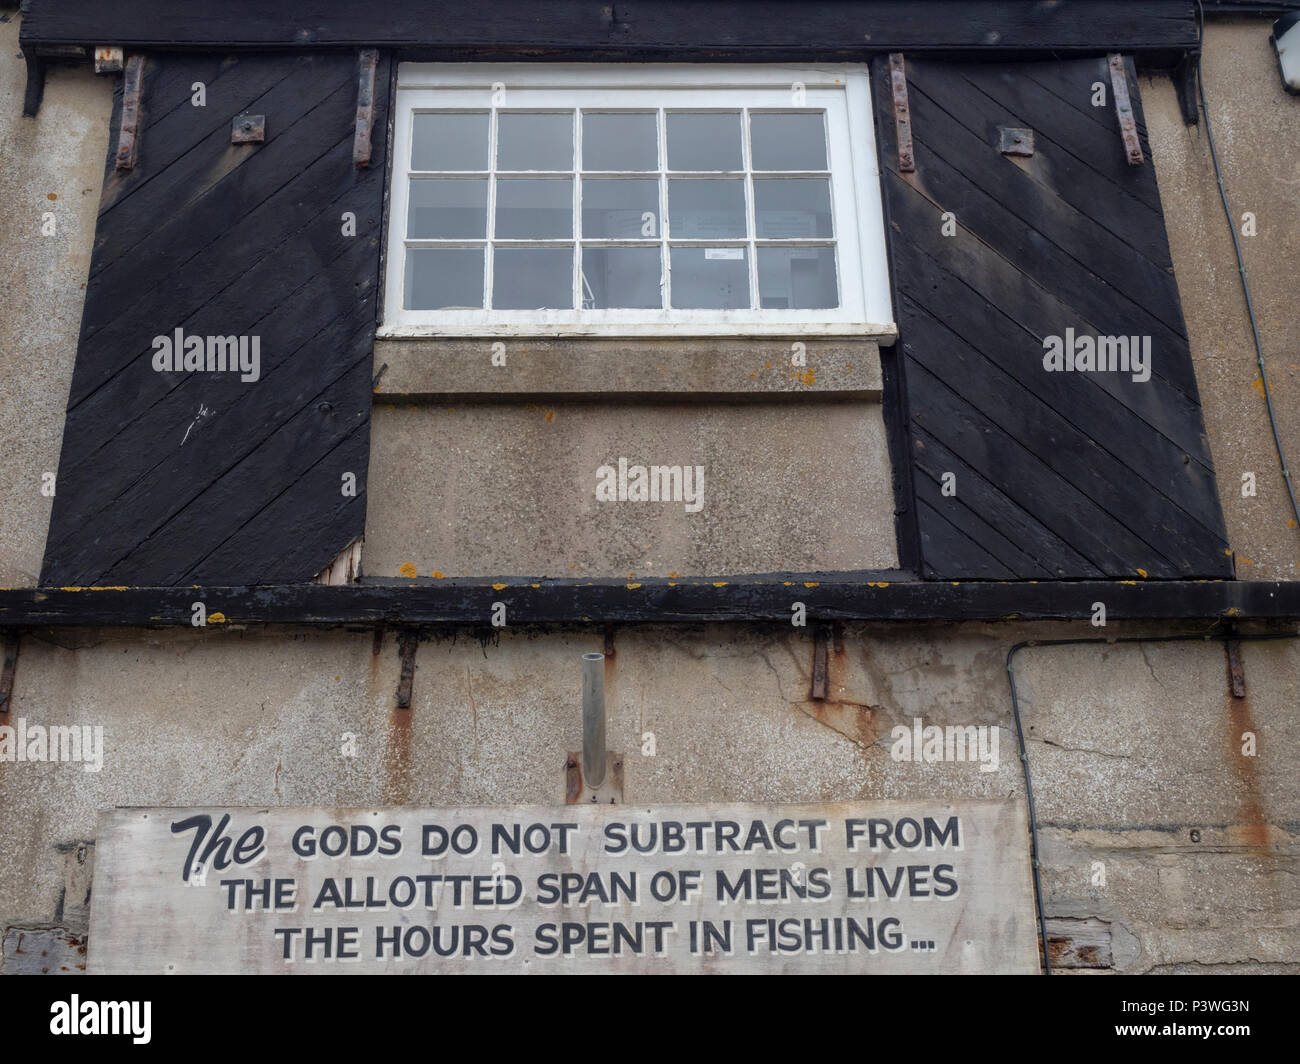 Gli dèi non sottrarre dall'assegnato span del mens vive le ore di pesca trascorso: Avviso sulla parete a Lyme Regis Marine Aquarium, Dorset Foto Stock